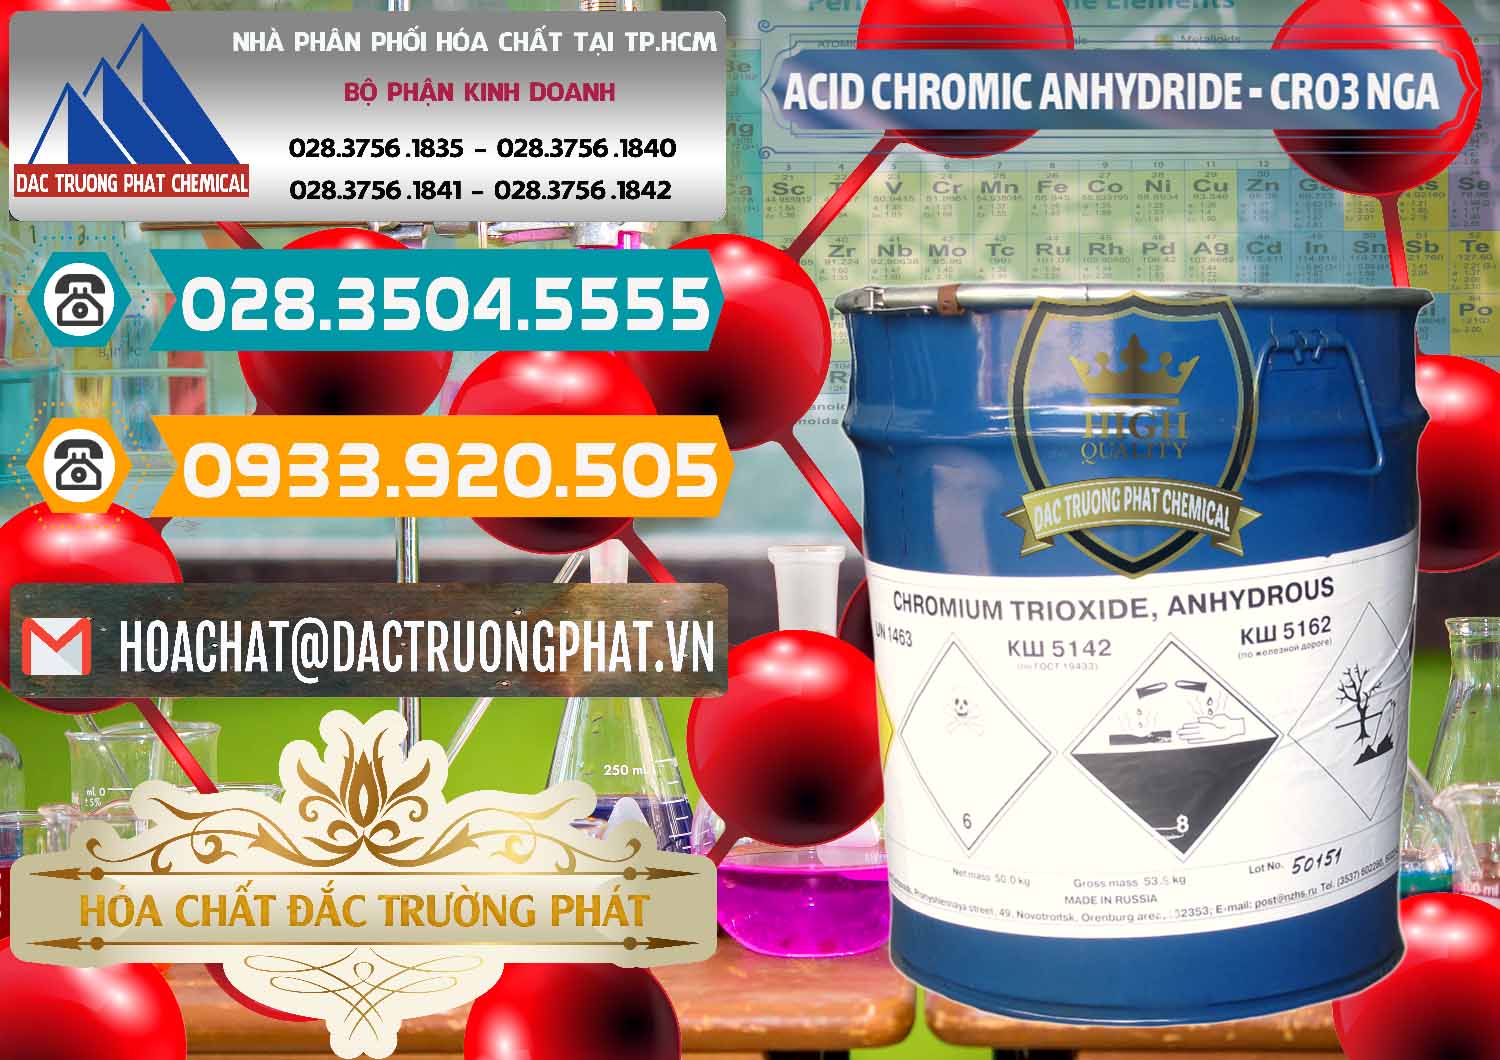 Công ty cung cấp _ bán Acid Chromic Anhydride - Cromic CRO3 Nga Russia - 0006 - Công ty cung cấp ( kinh doanh ) hóa chất tại TP.HCM - congtyhoachat.vn